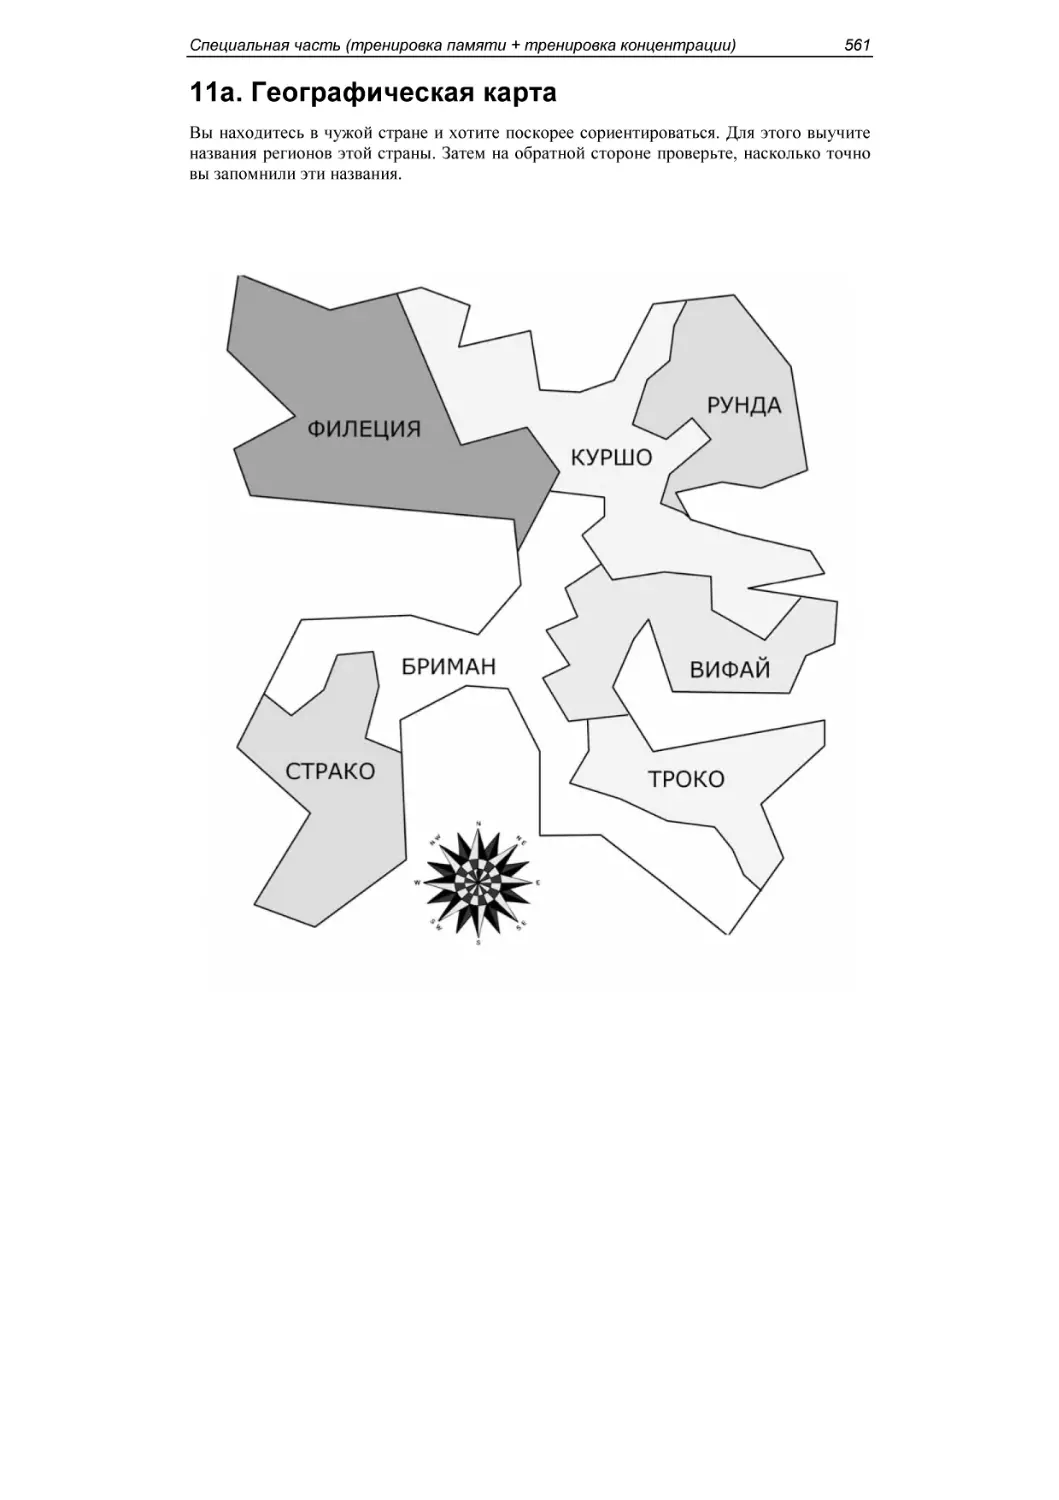 11a. Географическая карта